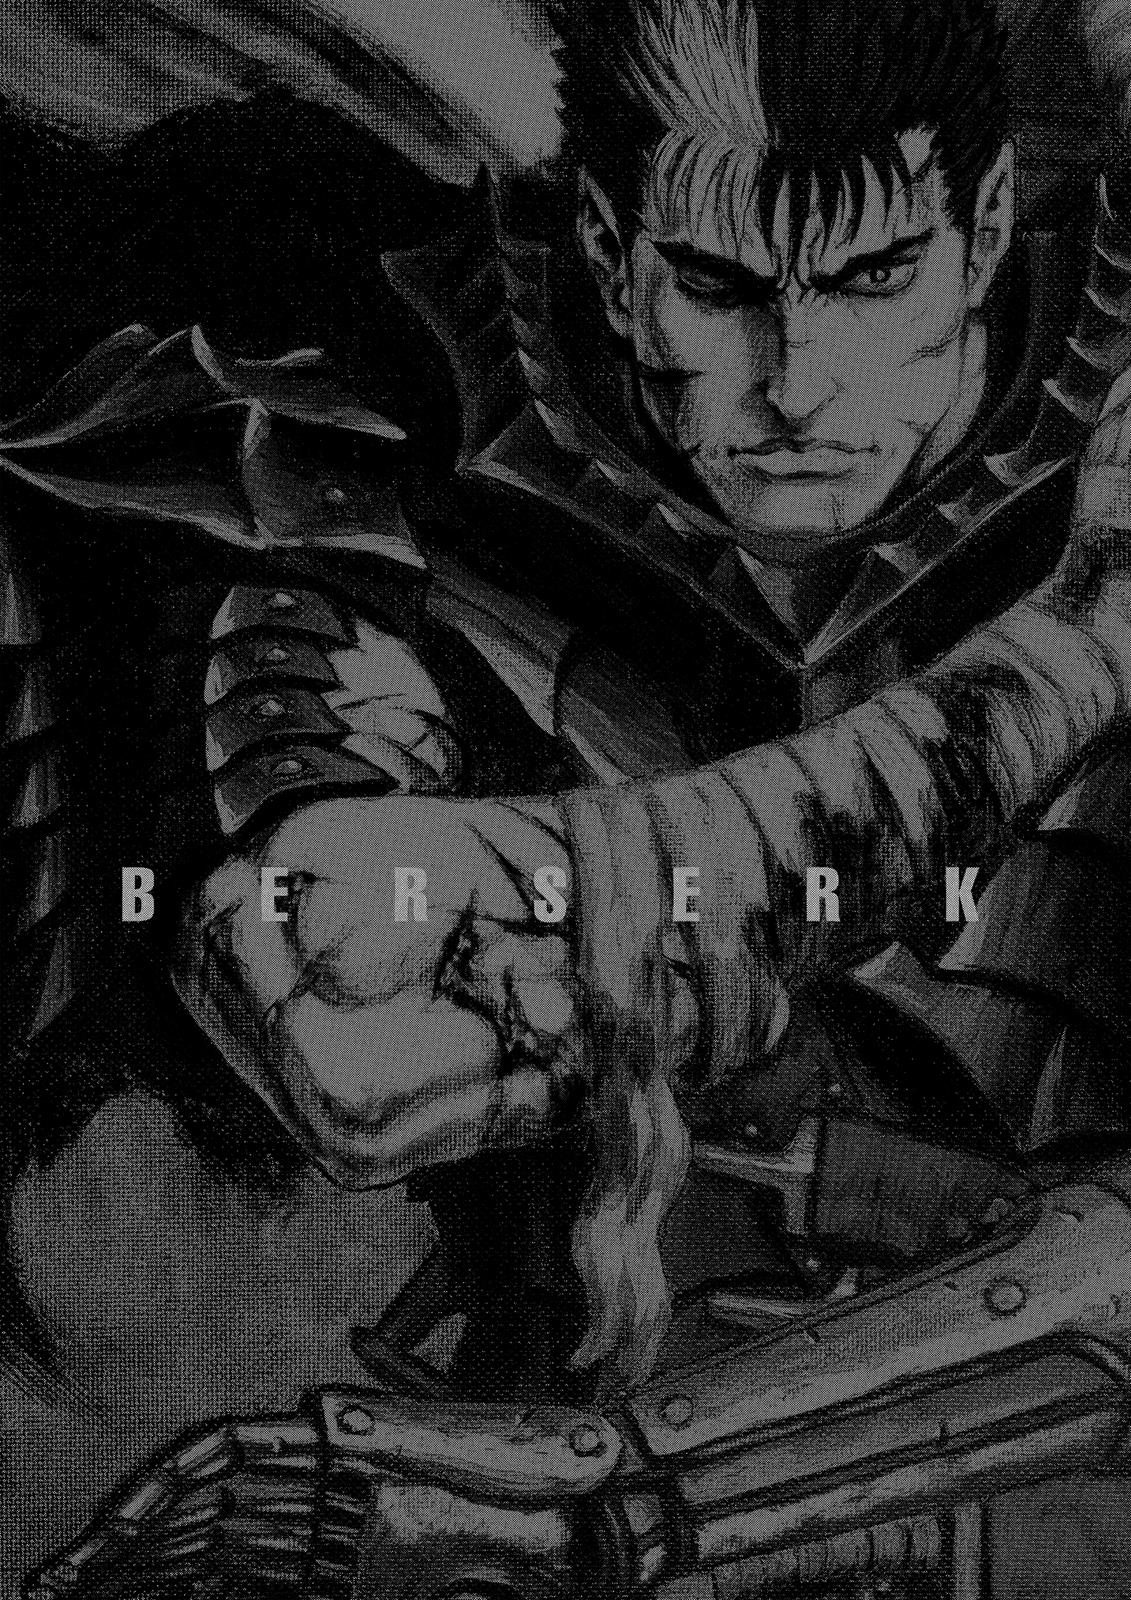 Berserk Manga Chapter 349 image 18